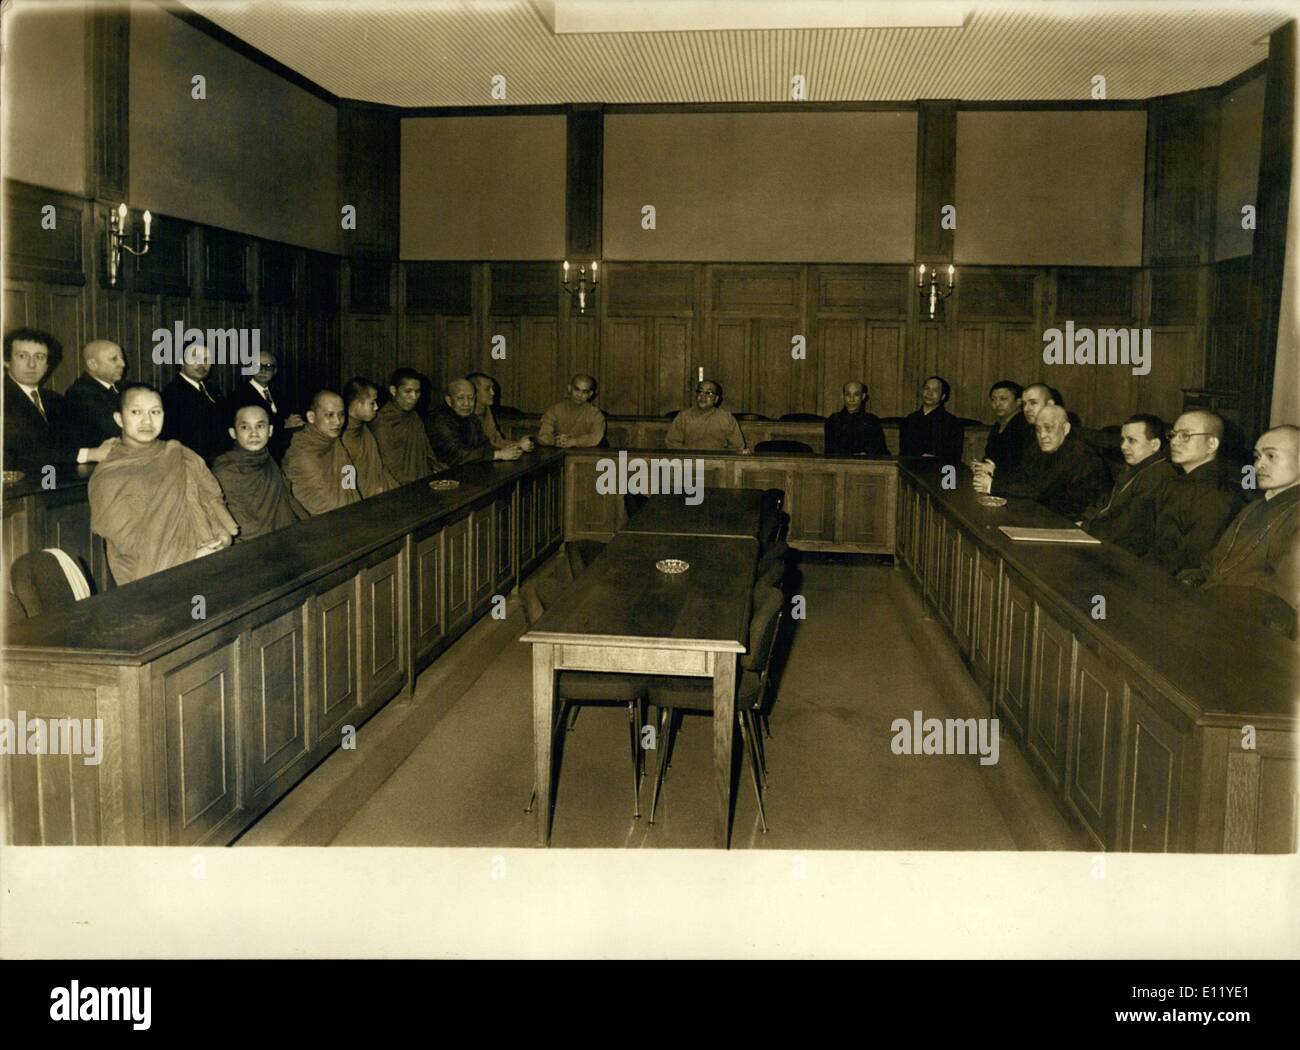 Marzo 23, 1981 - El estreno mundial del budismo en París reunión privada Foto de stock